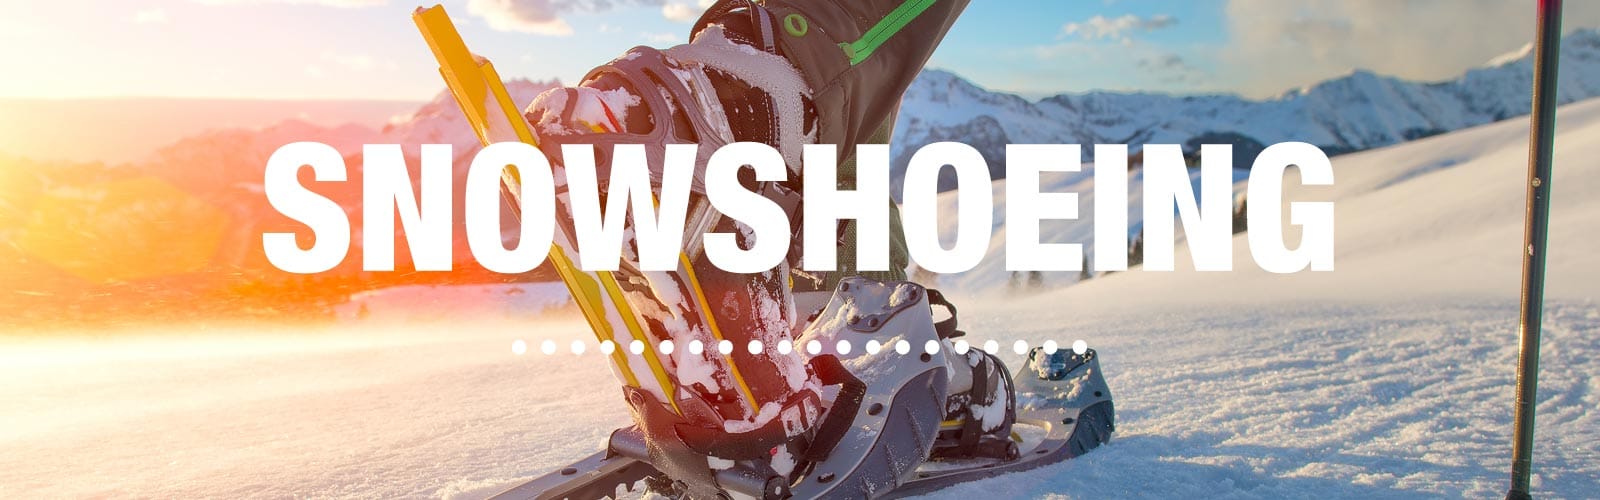 Snowshoeing Checklist